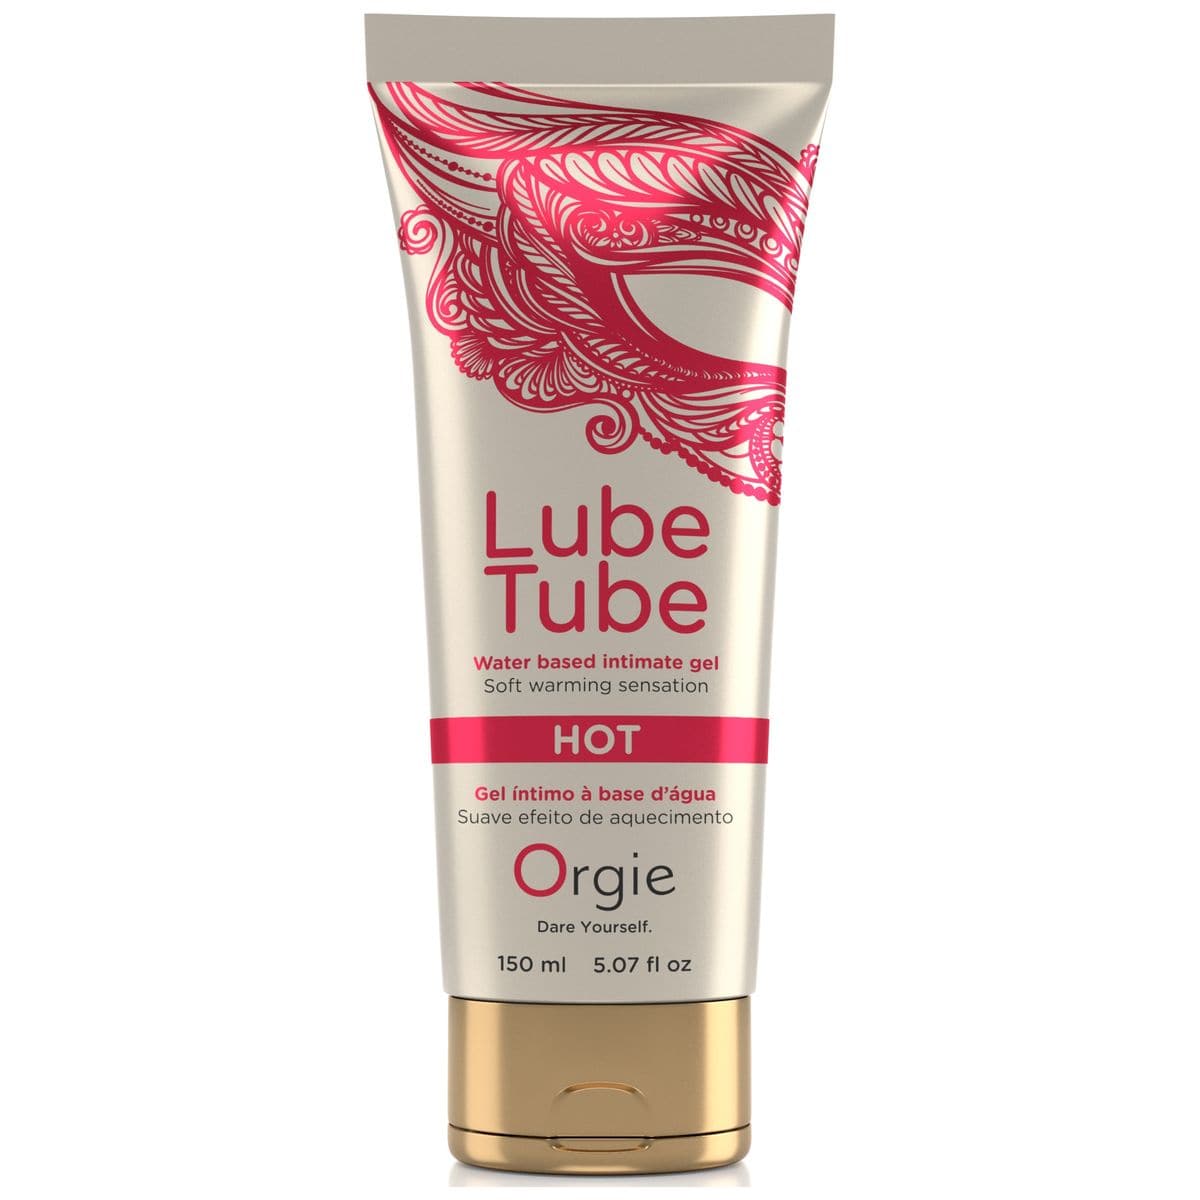 Lubrificante Lube Tube 150ml Hot/Quente - Sensação de Aquecimento para Experiências Sensuais - Pérola SexShop